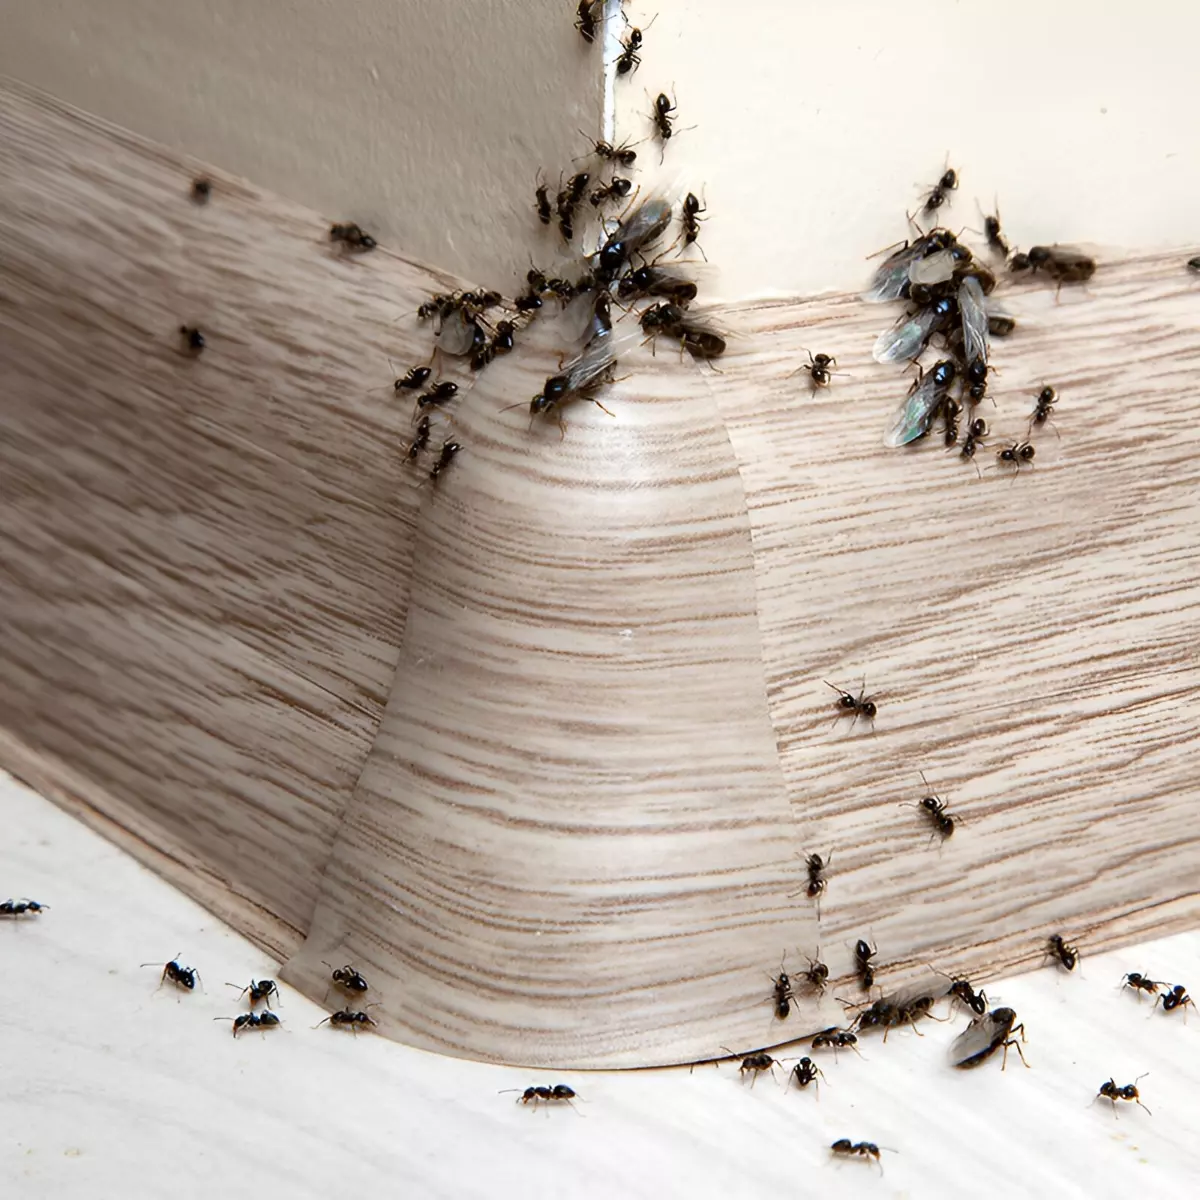 infestation de fourmis et fourmis volantes a l interieur